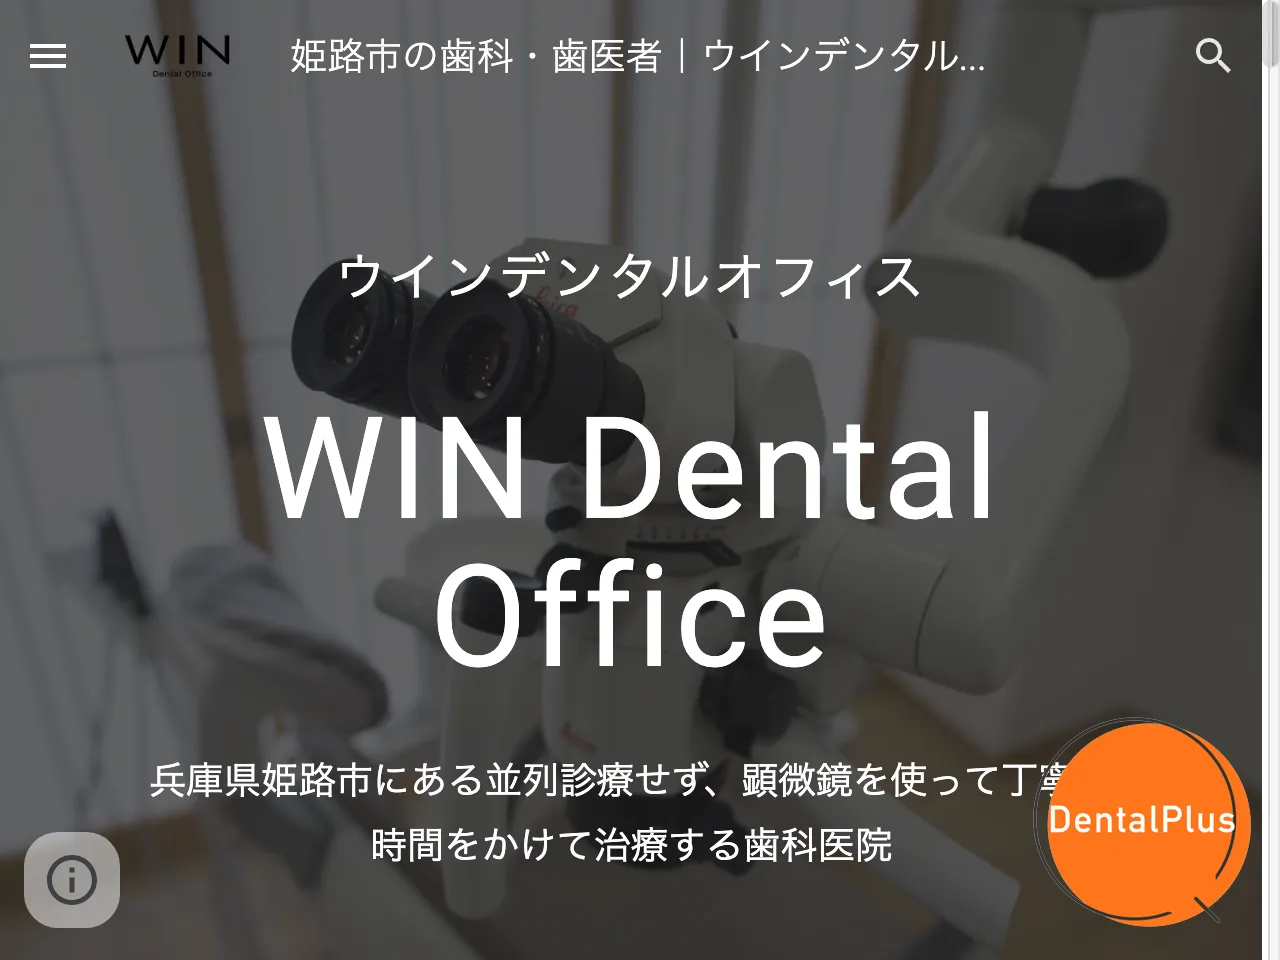 ウインデンタルオフィス WIN Dental Officeのウェブサイト